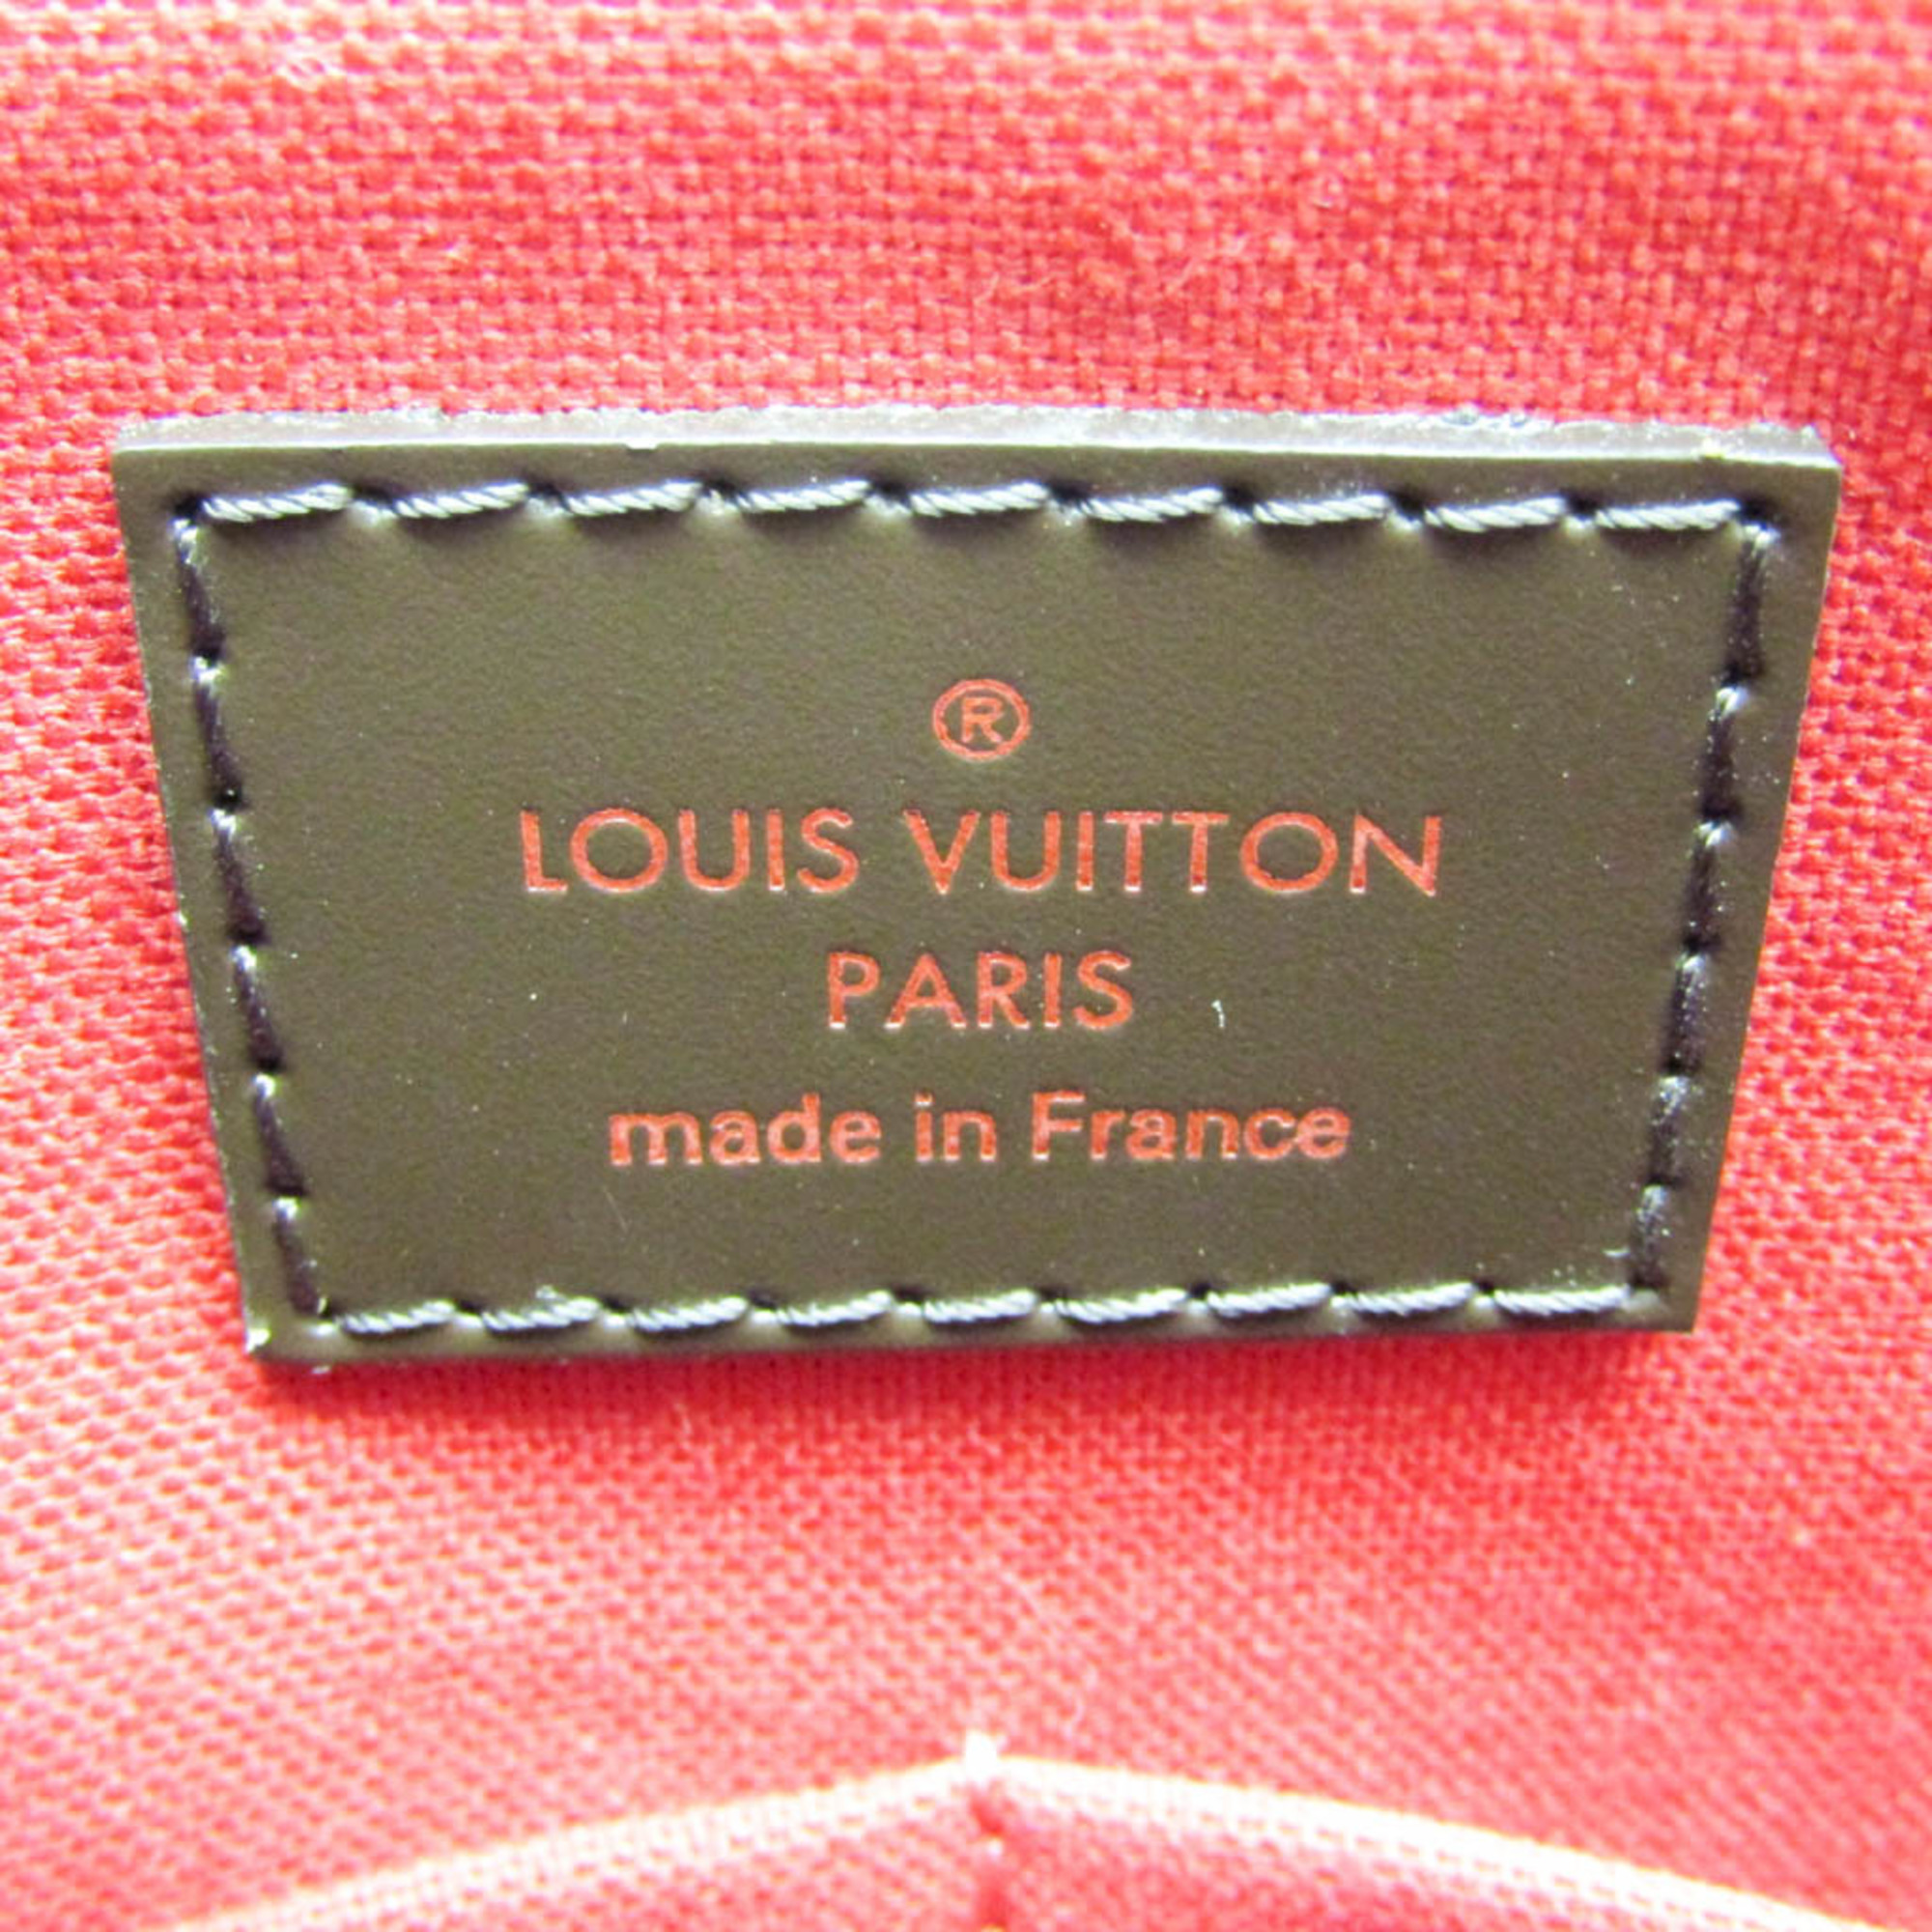 ルイ・ヴィトン(Louis Vuitton) ダミエ ウェストミンスターGM N41103 レディース トートバッグ エベヌ